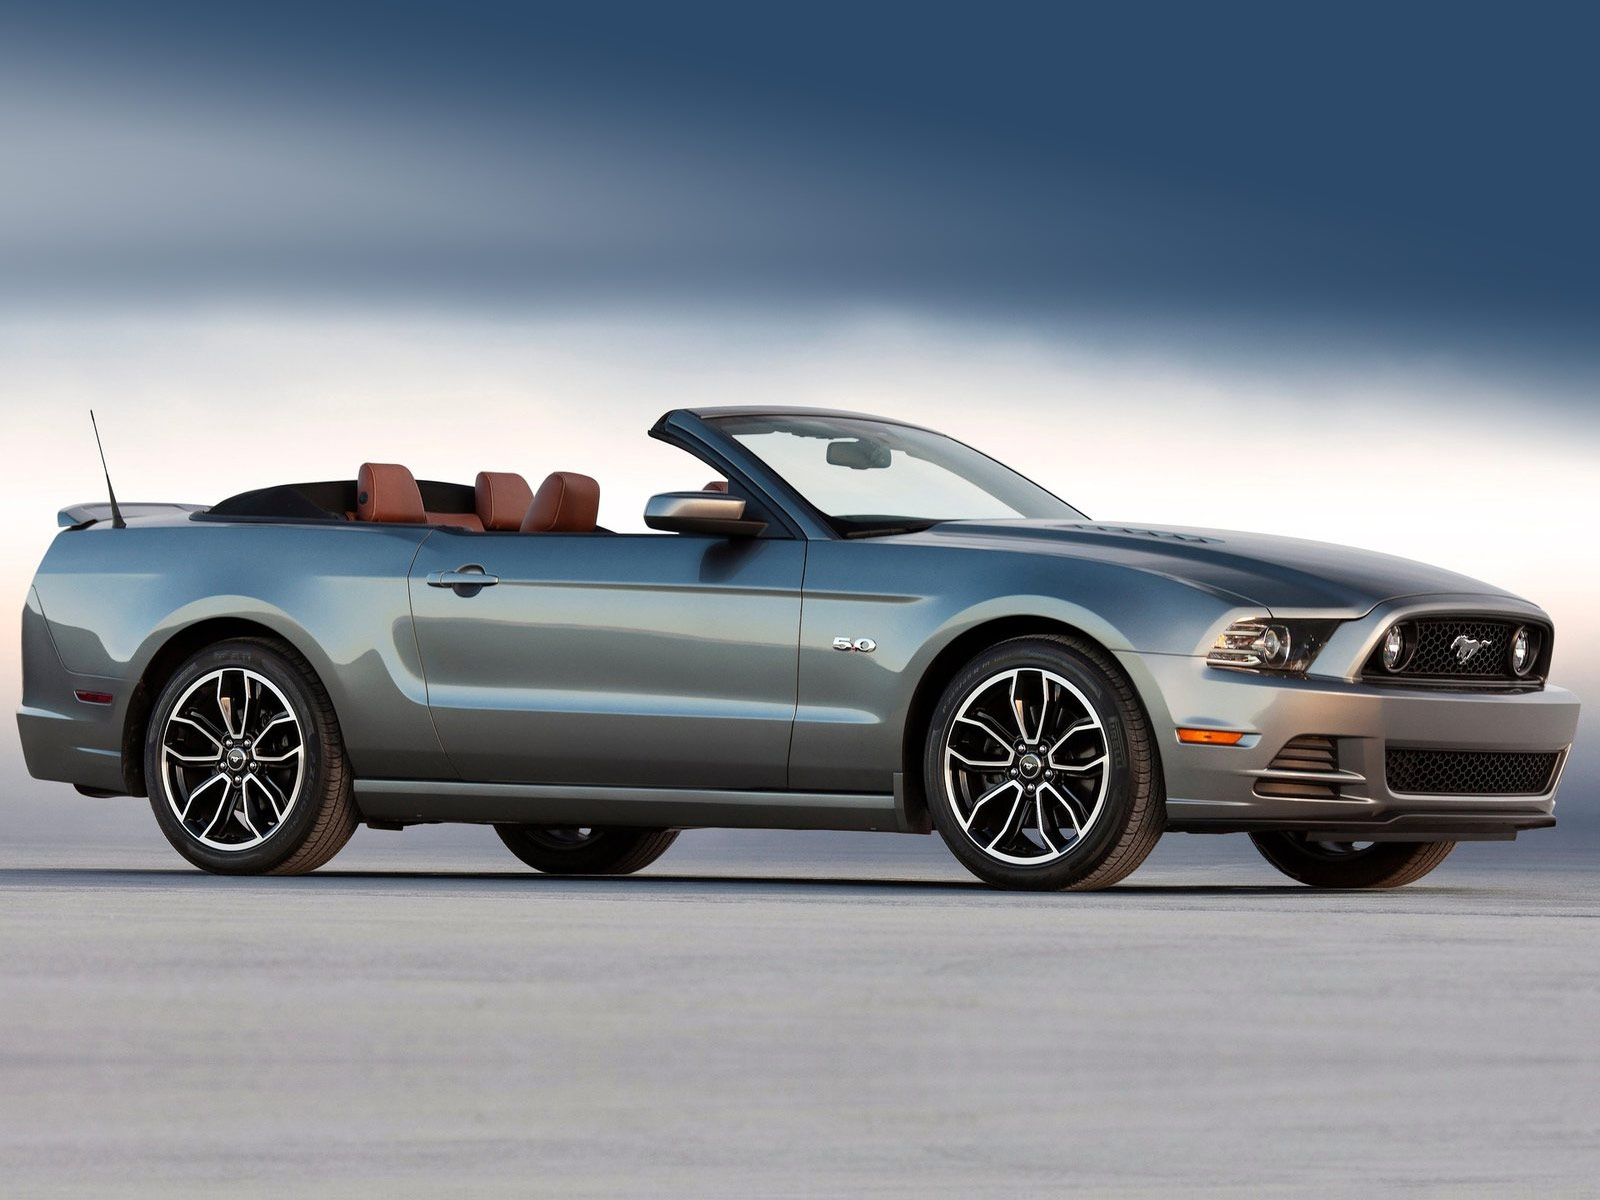 Gambar Mobil Ford Mustang GT 2013